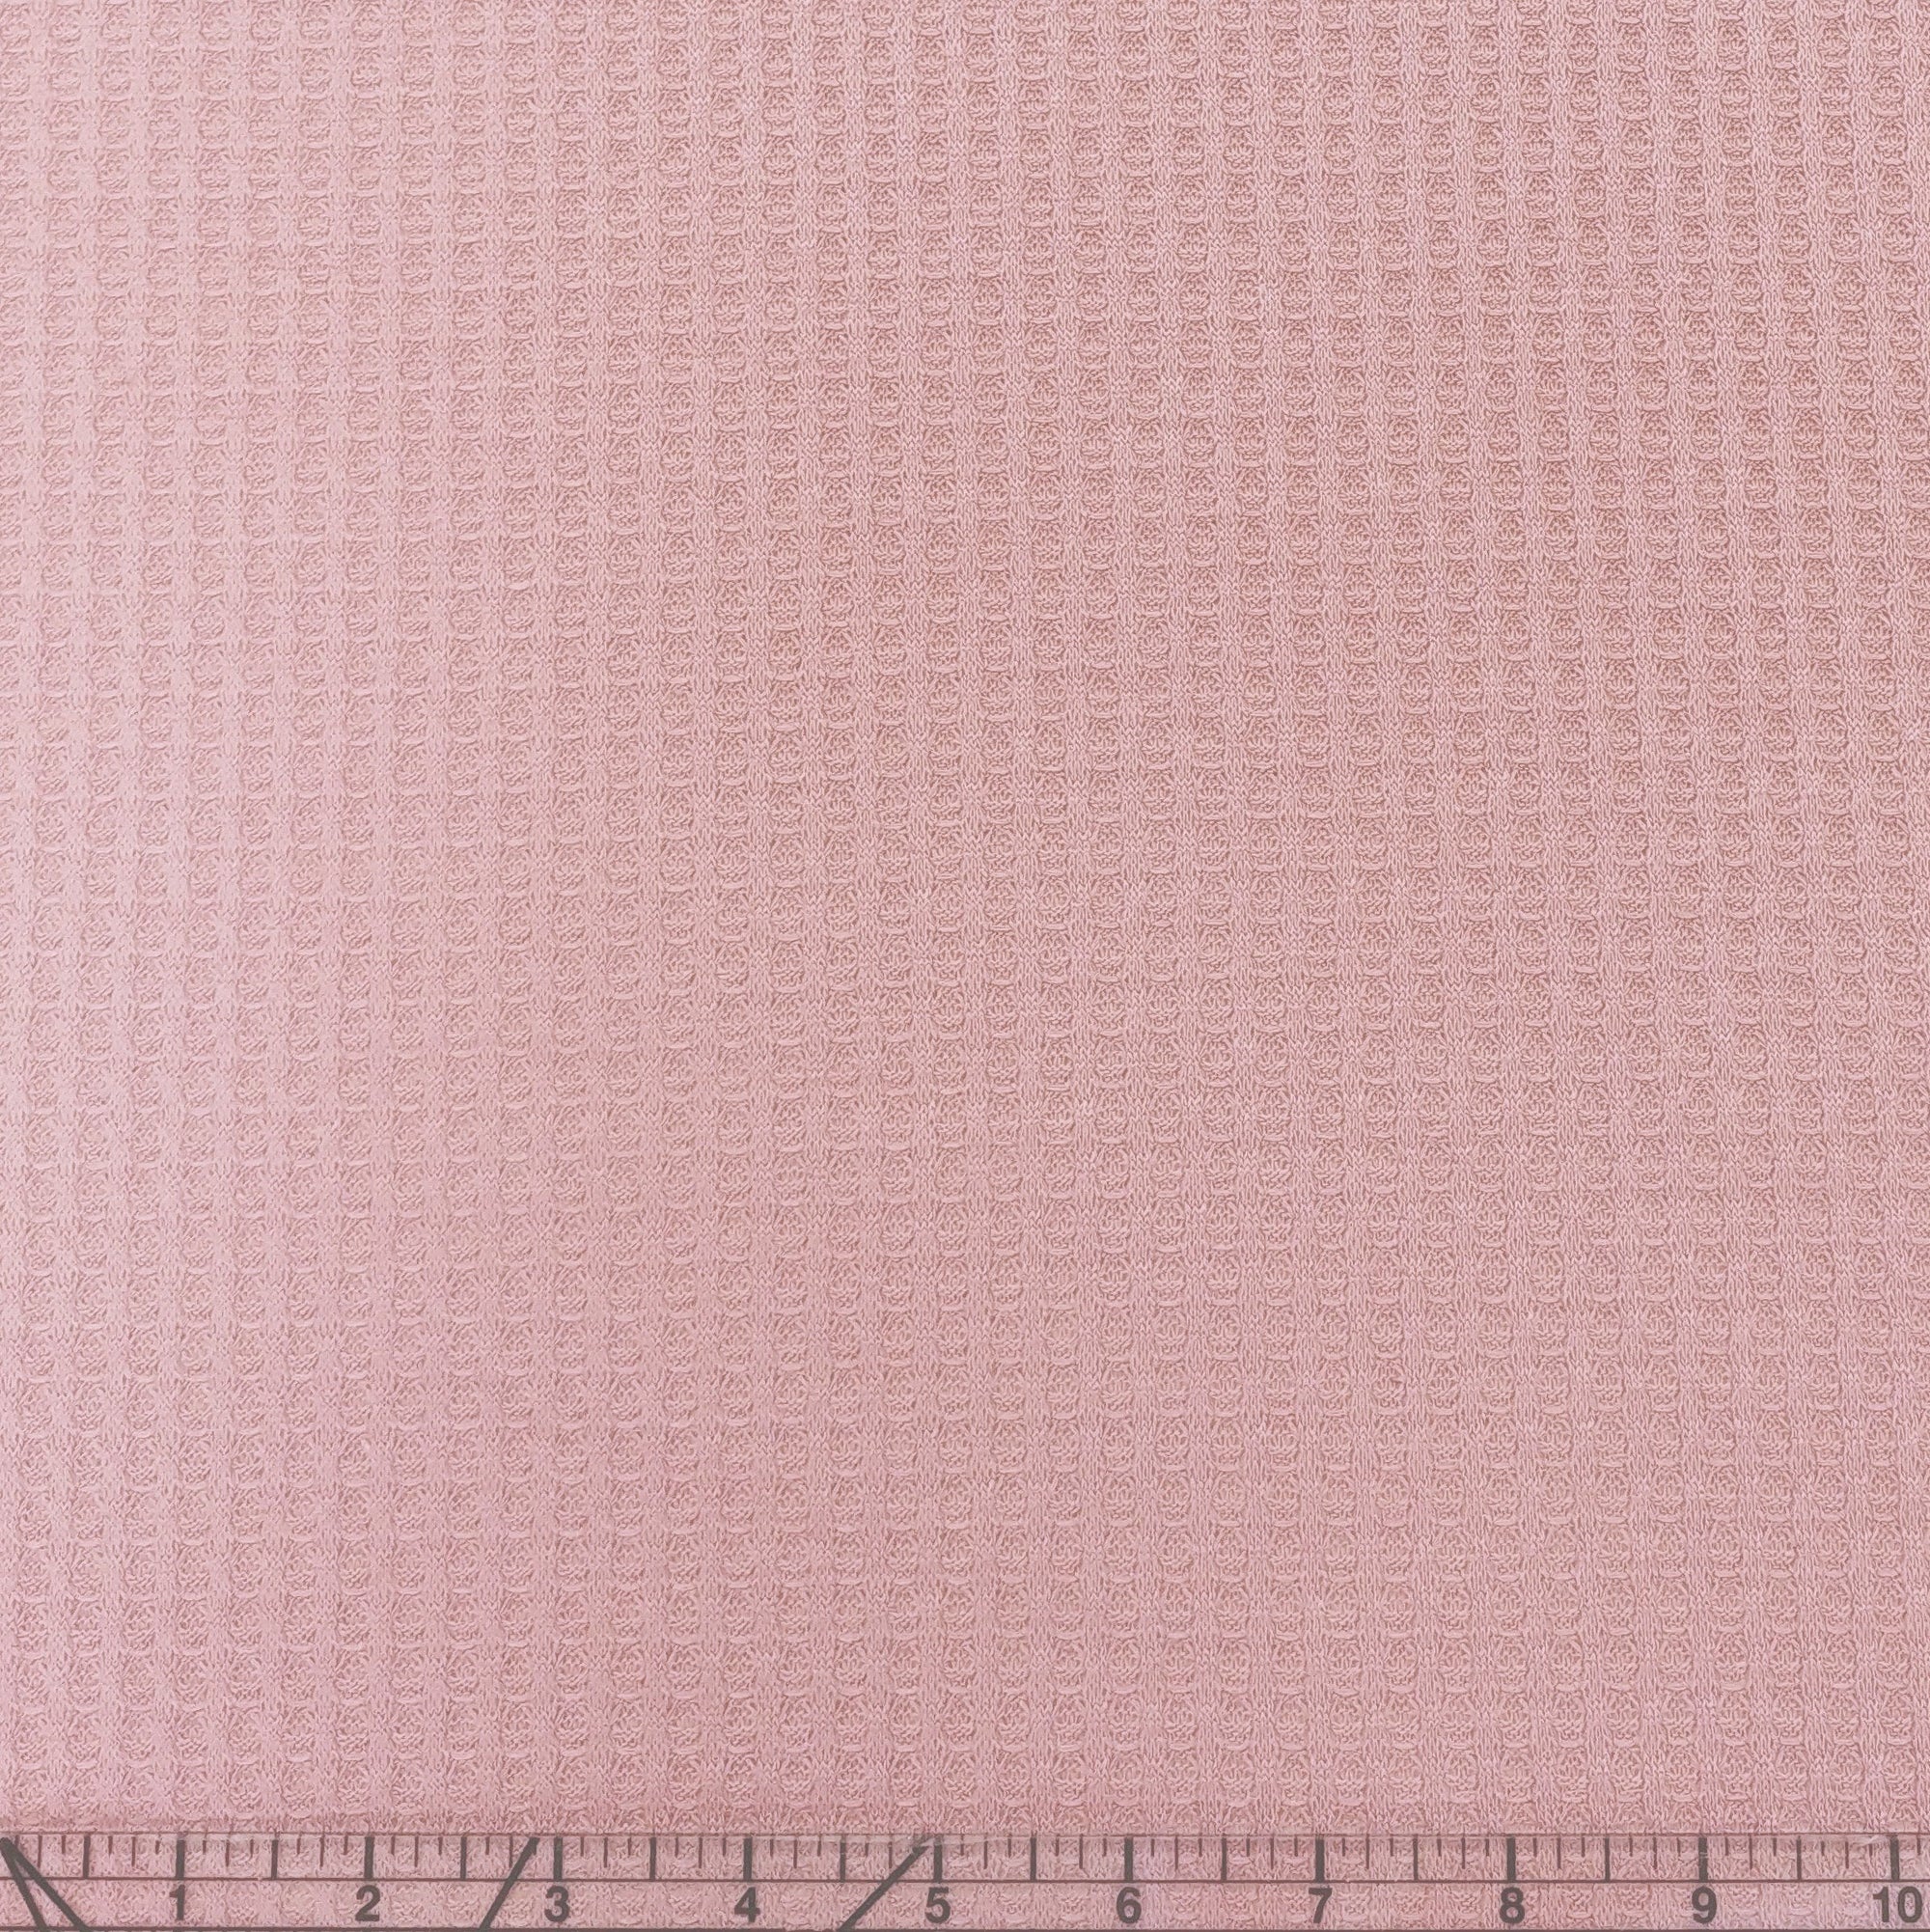 Dusty Pink Waffle Knit Fabric Fabric, Raspberry Creek Fabrics, watermarked, restored